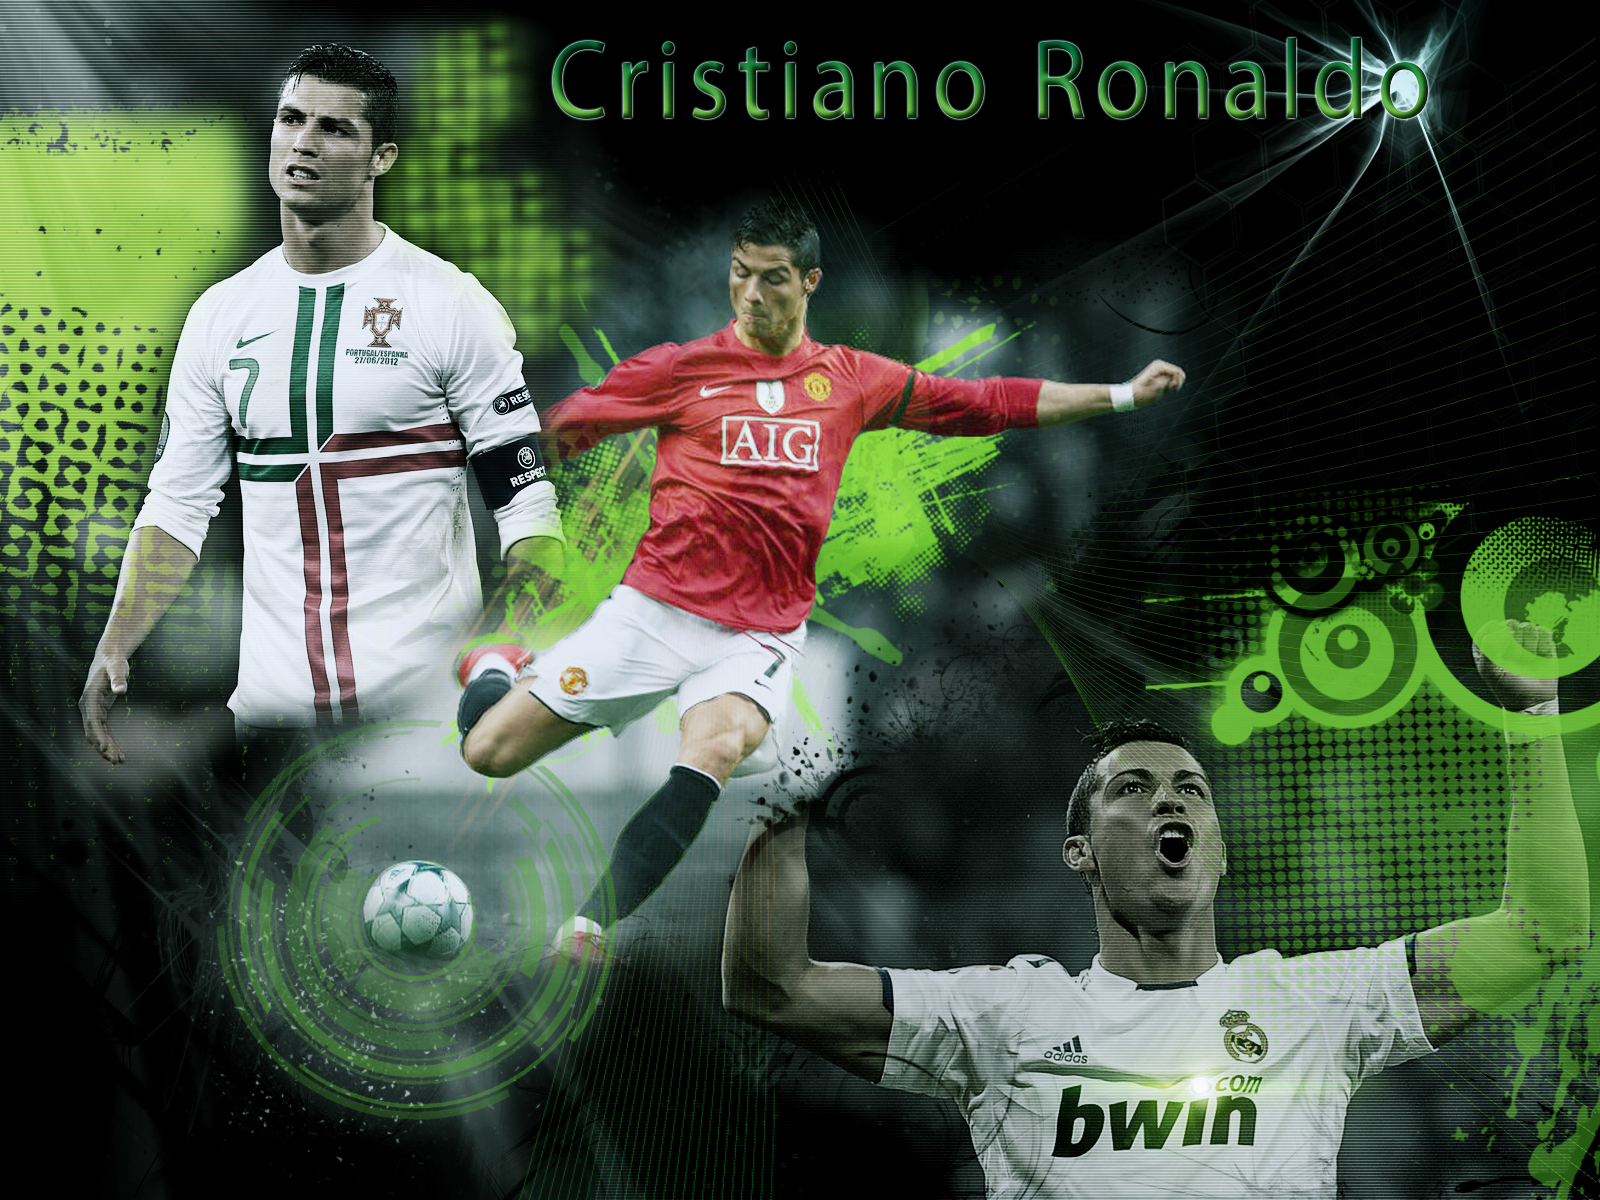 Cristiano Ronaldo Wallpaper Stock Photos